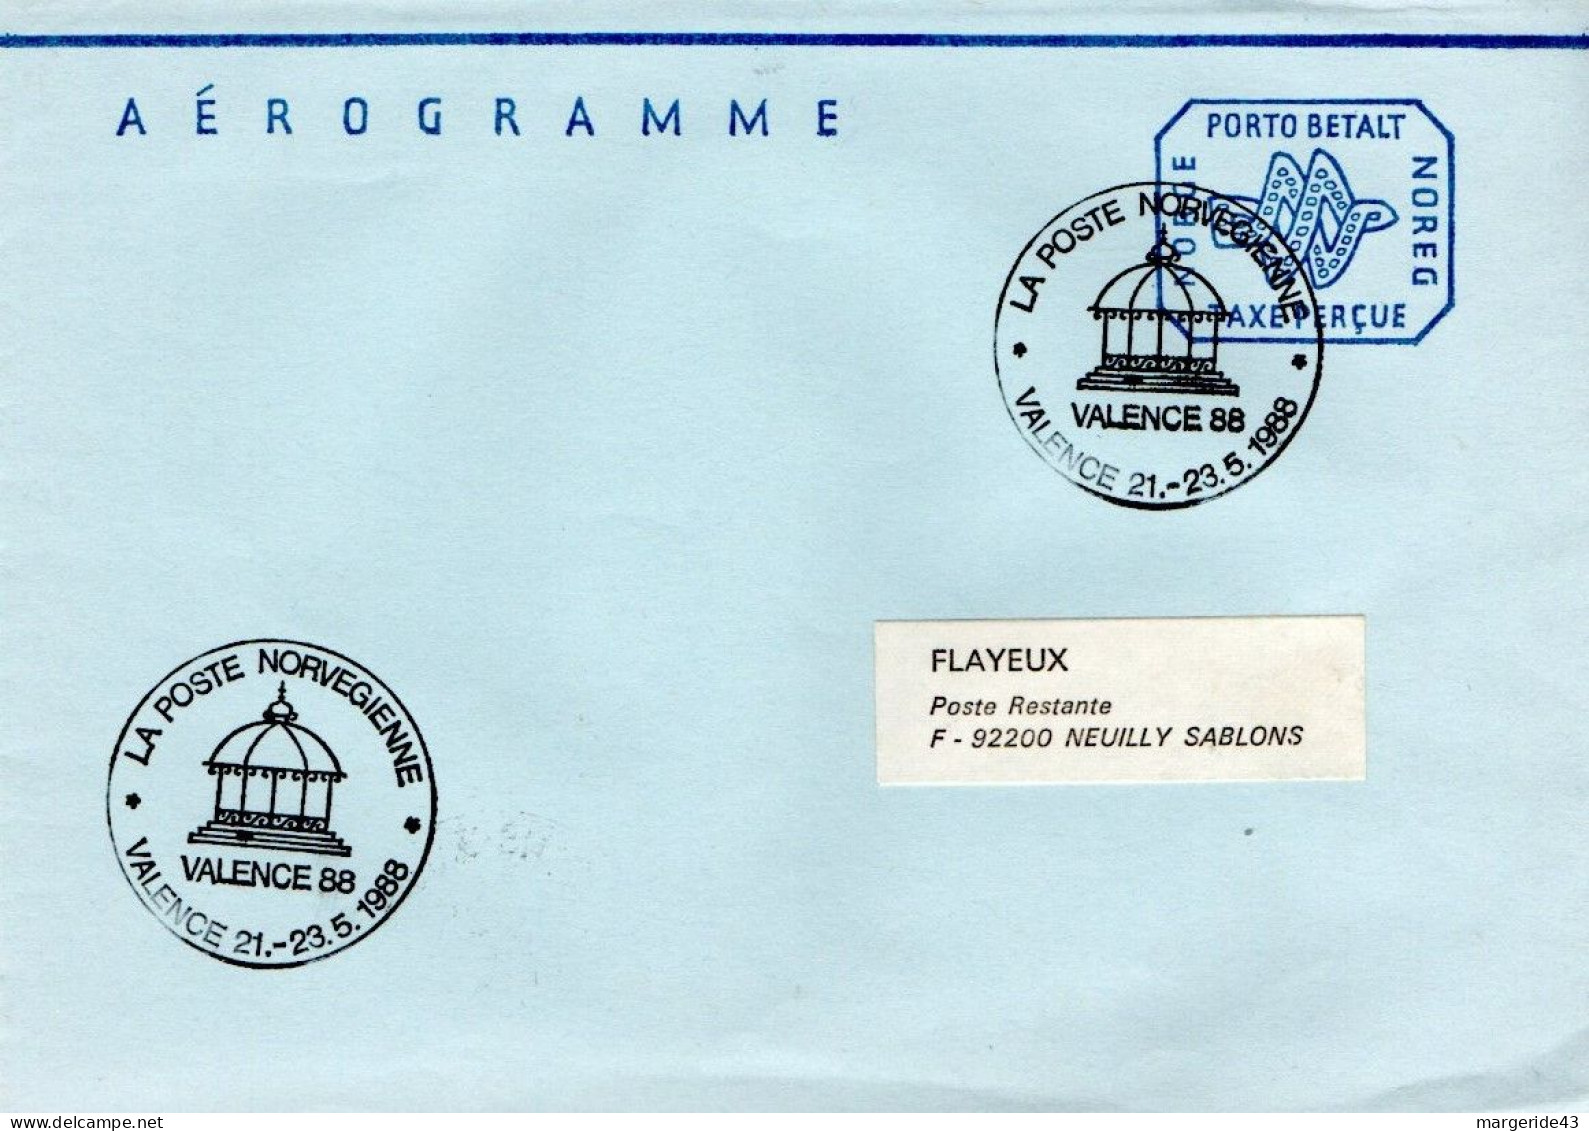 NORVEGE  AEROGRAMME LA POSTE NORVEGIENNE PRESENTE A EXPO VALENCE 88 - Postal Stationery